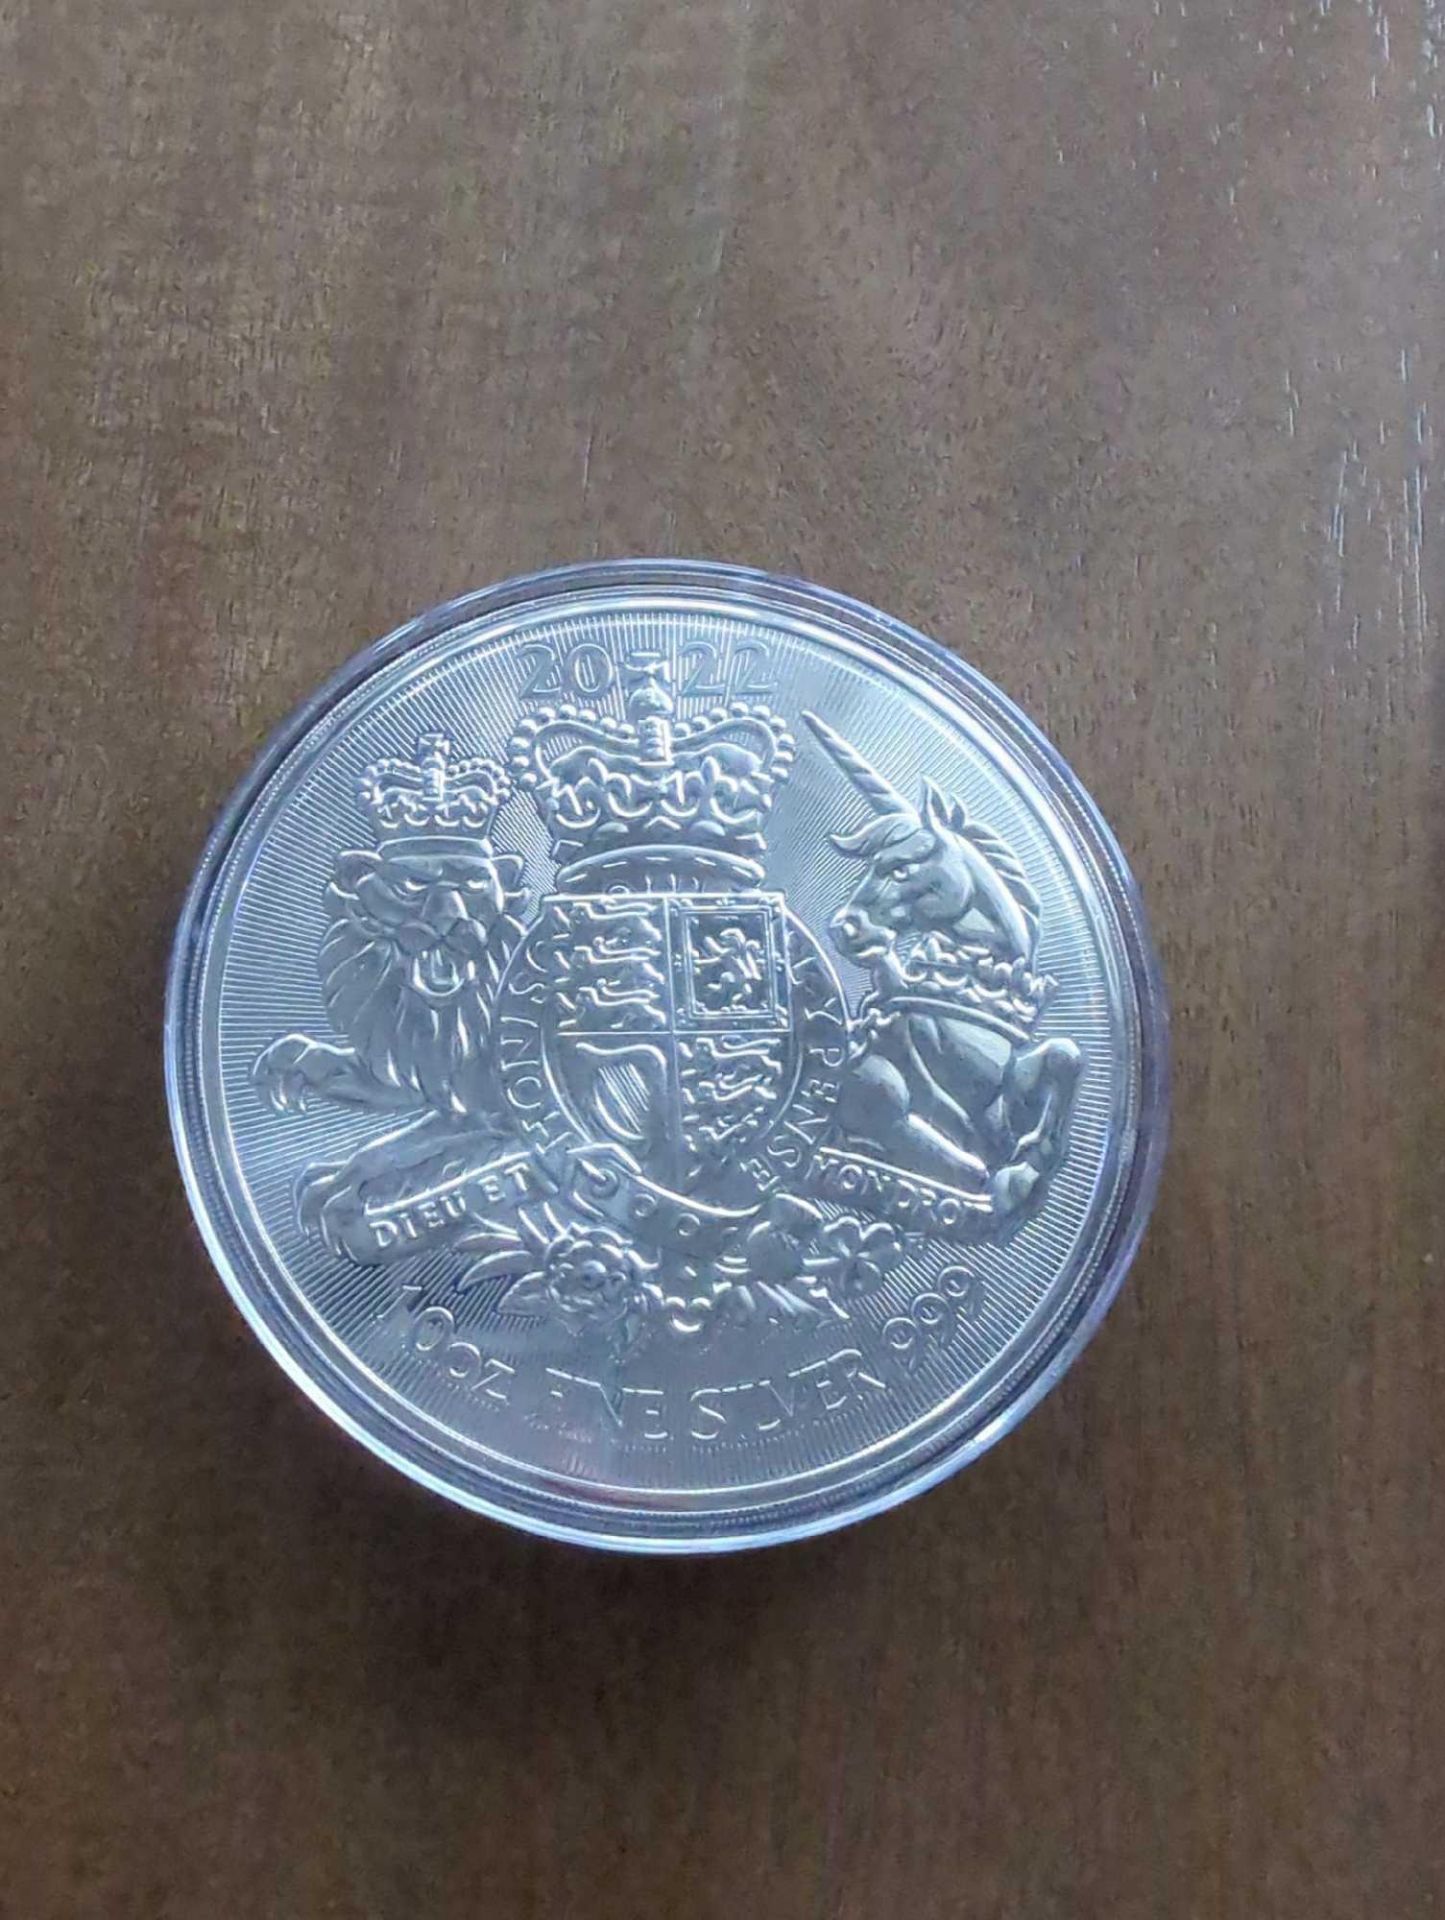 10 oz British Silver Royal Arms Coin